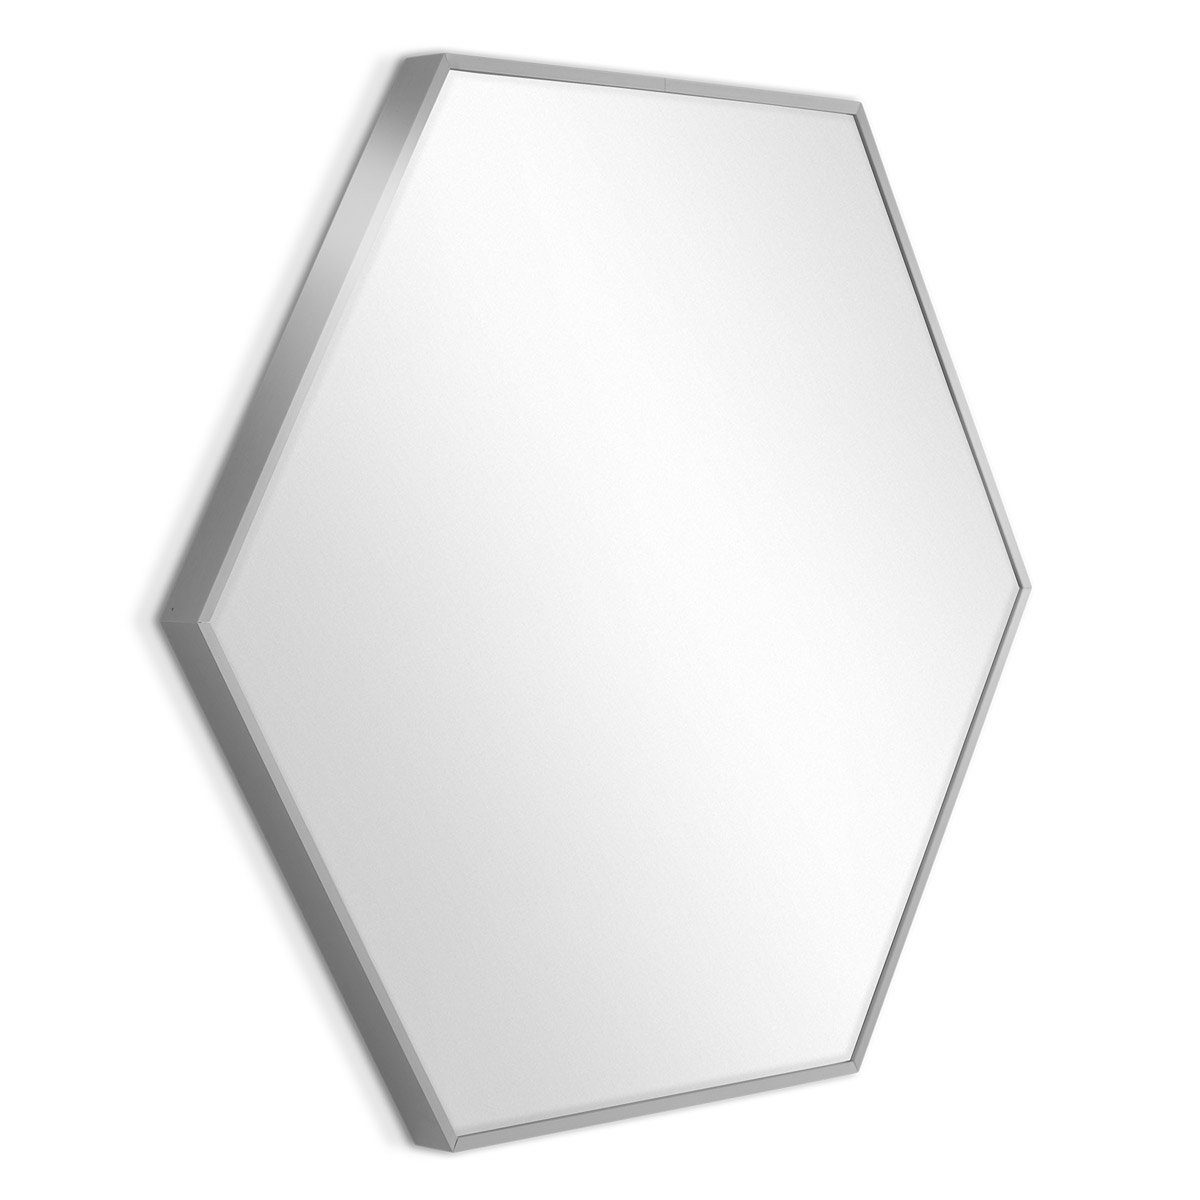 PHOTOLINI Spiegel sechseckig Metallrahmen mit Silber 52x60 Rahmen cm, schmaler